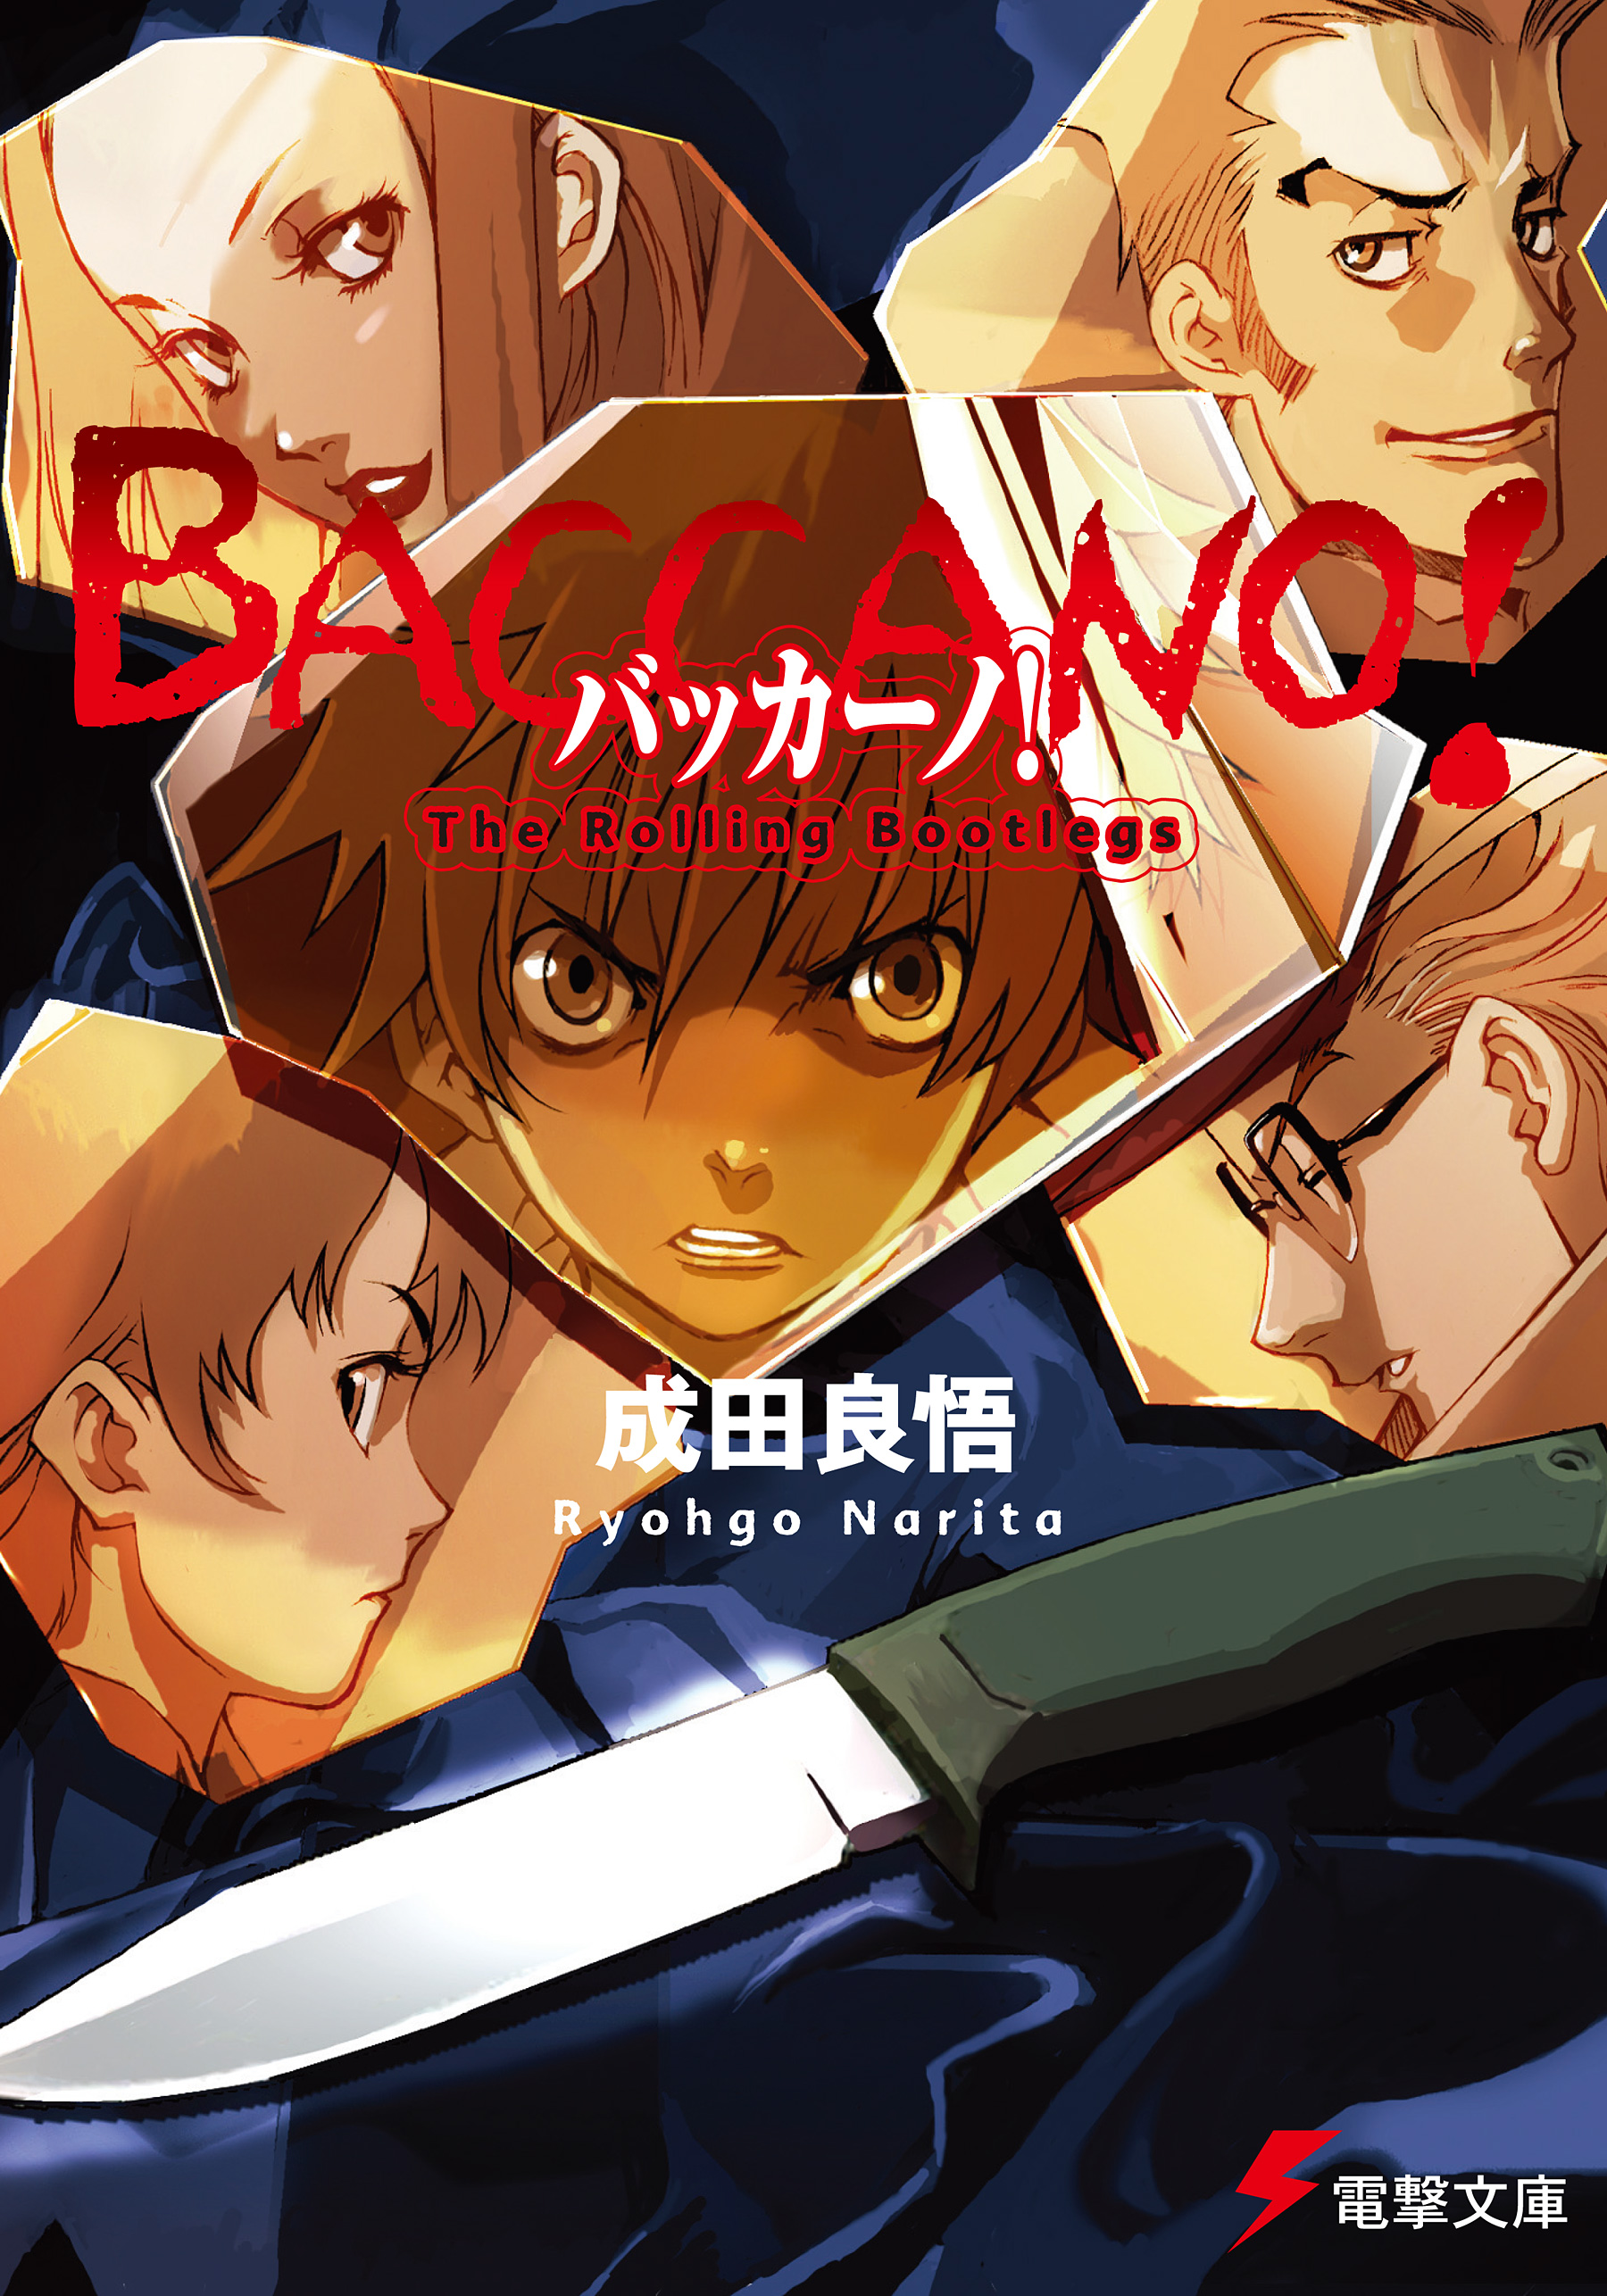 Baccano! Novels Get Manga Set in 1700s - News - Anime News Network